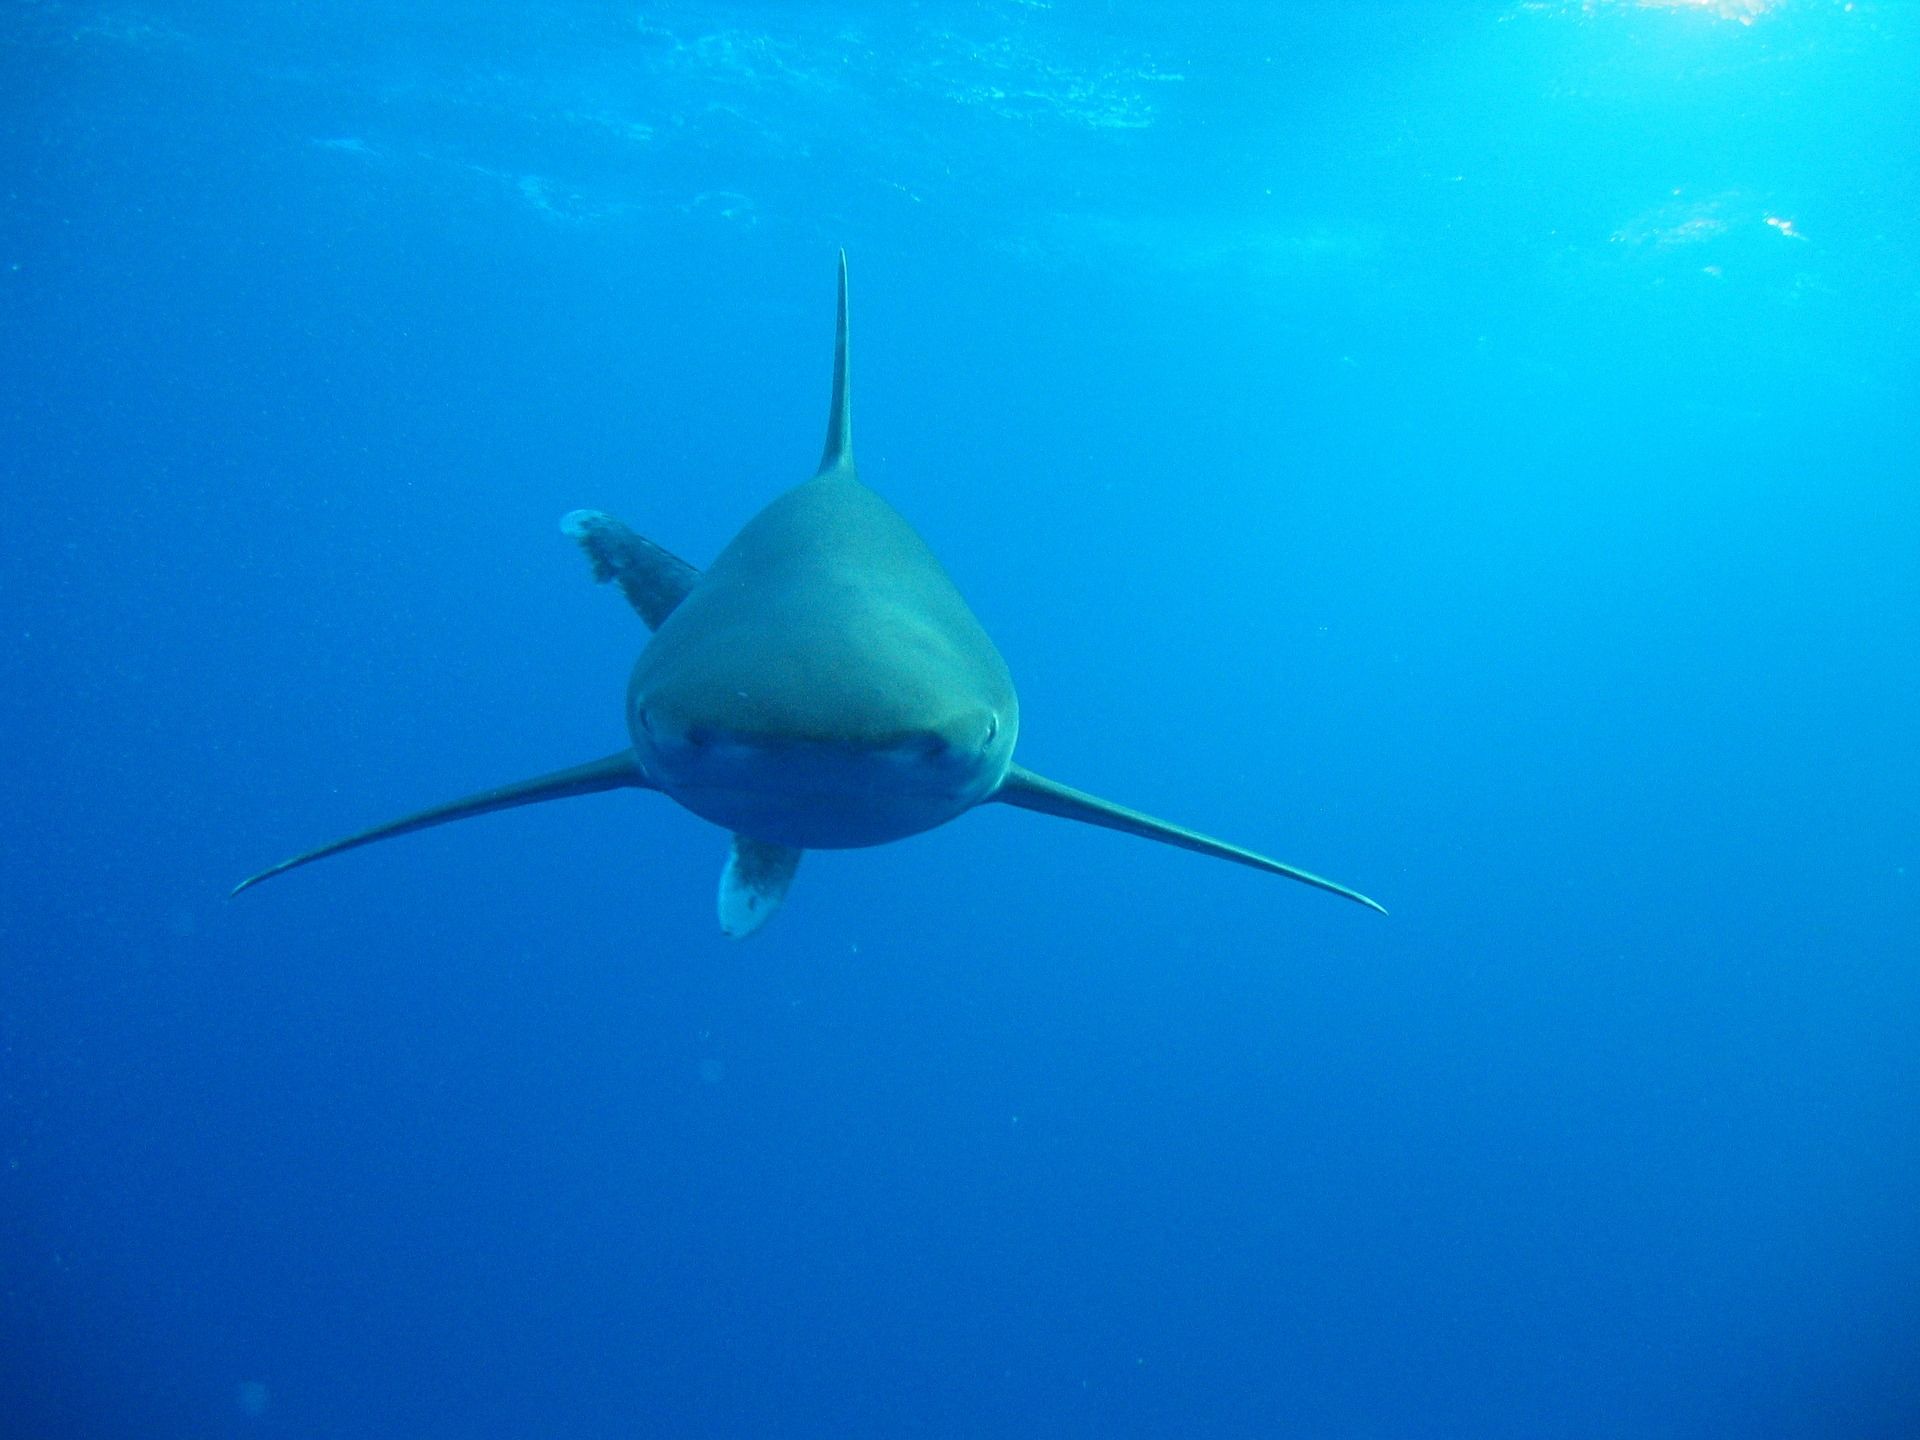 Haaien in de Rode Zee: de roofvis kan meestal met een moedige slag tegen de mond van de haai worden verdreven. Foto: Pixabay